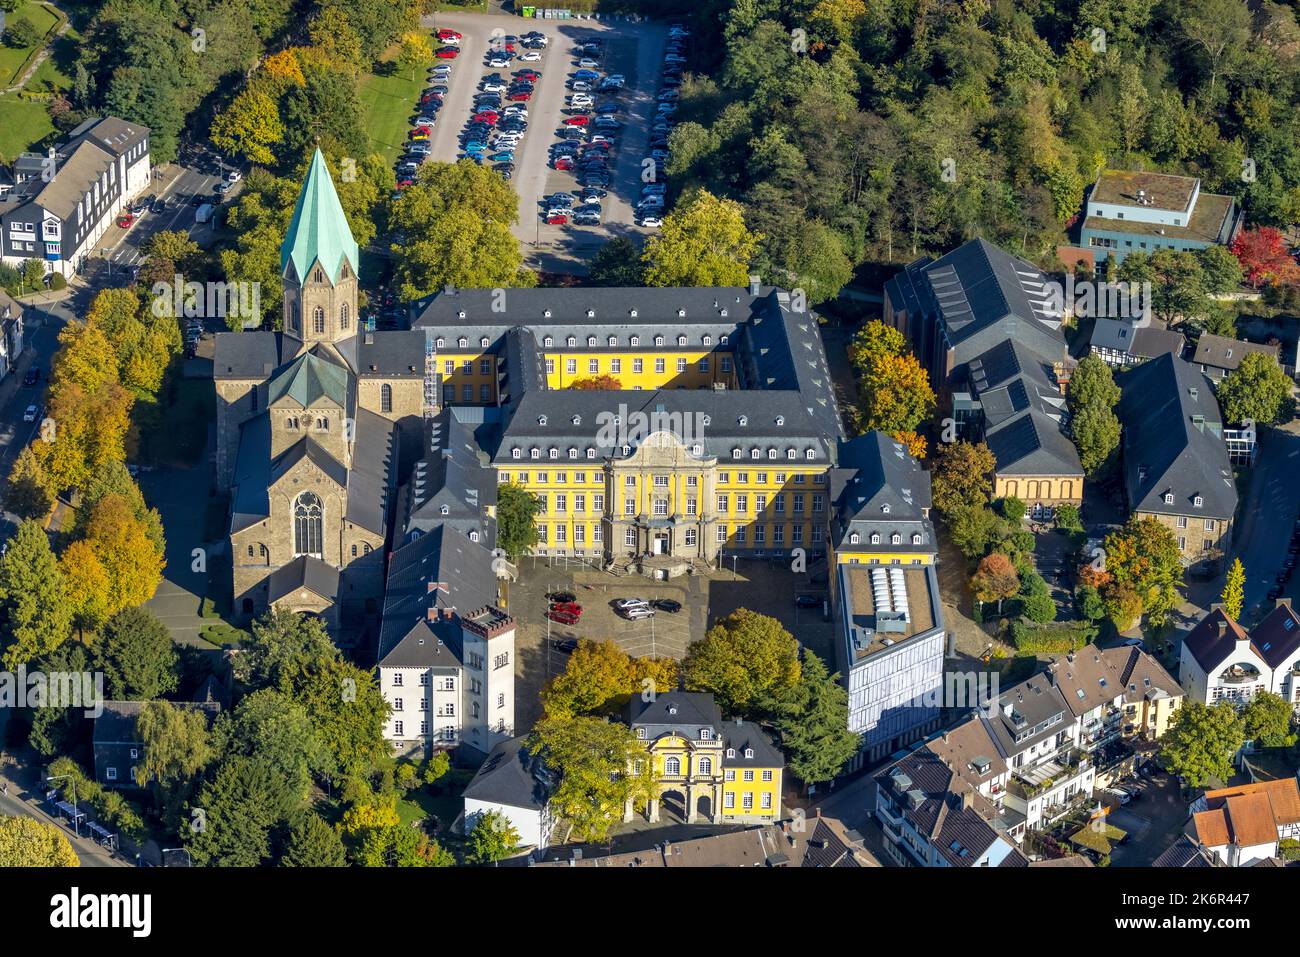 Vue aérienne, Université des arts de Folkwang, église catholique basilique St. Ludgerus, werden, Essen, région de la Ruhr, Rhénanie-du-Nord-Westphalie, Allemagne, Worshi Banque D'Images